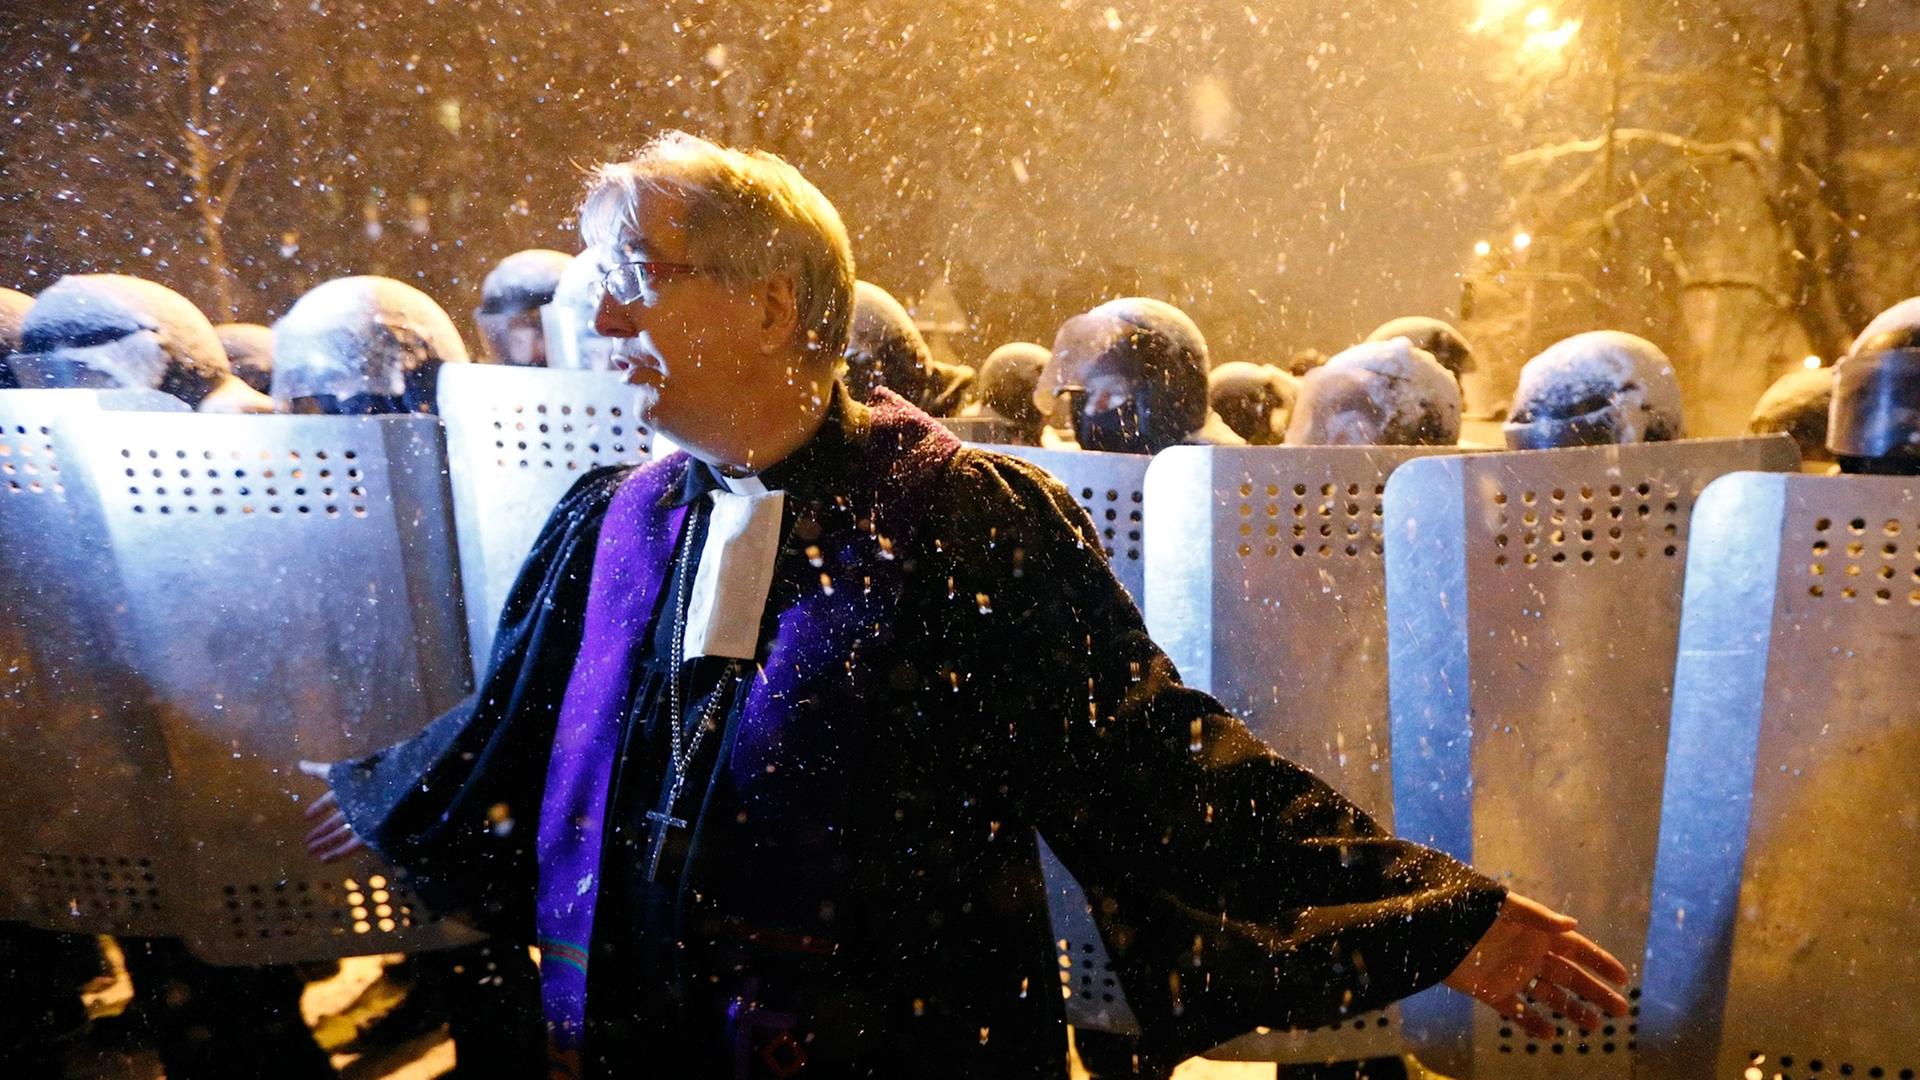 Pfarrer Ralf Haska steht in violettem Ornat vor einer Reihe von ukrainischen Sicherheitskräften, die sich hinter Schutzschilden verschanzt haben. Es ist Nacht, und es schneit.